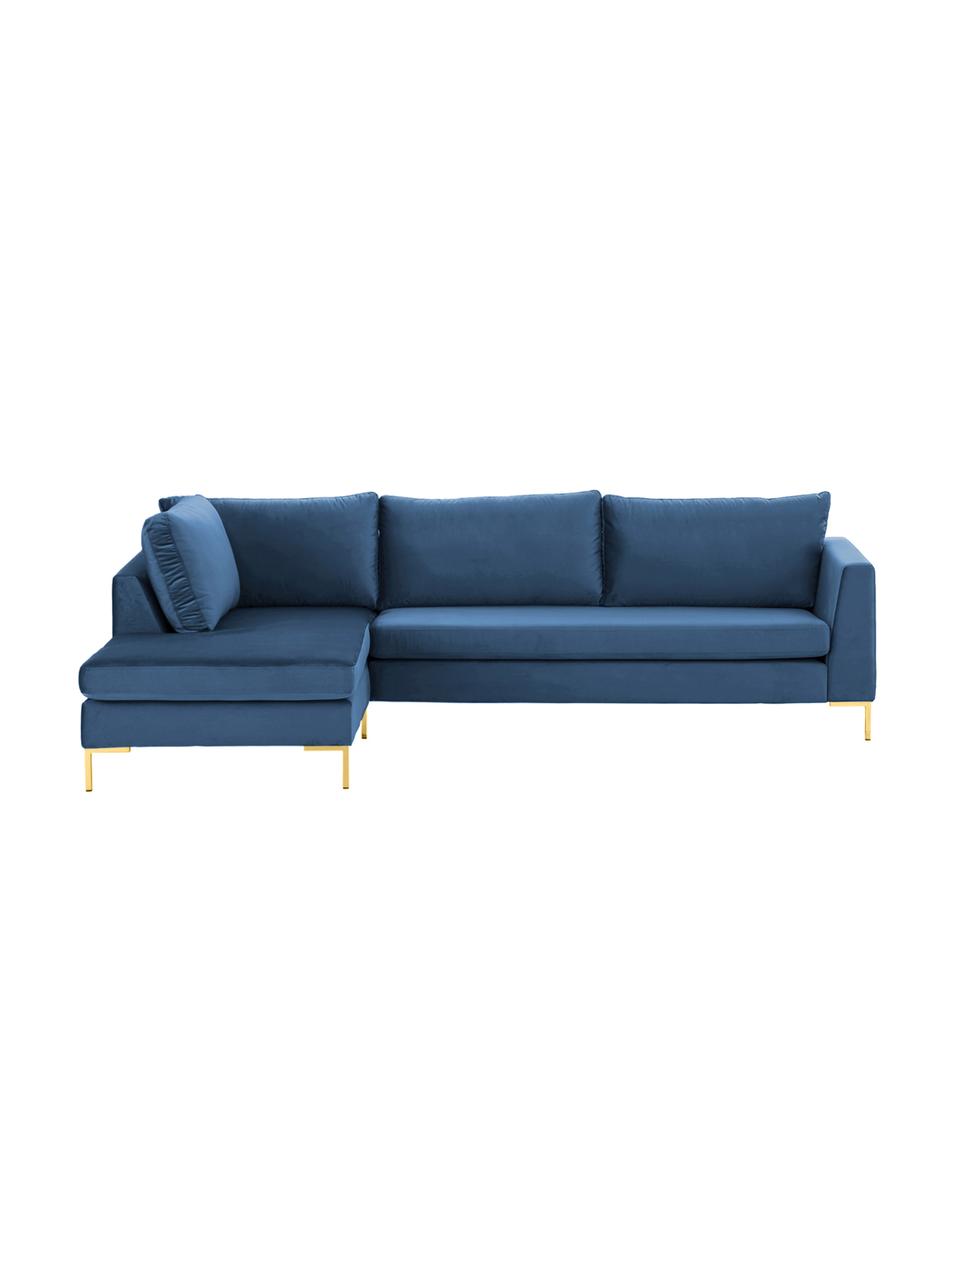 Sofa narożna z aksamitu z metalowymi nogami Luna, Tapicerka: aksamit (poliester) Dzięk, Nogi: metal galwanizowany, Aksamitny niebieski, złoty, S 280 x G 184 cm